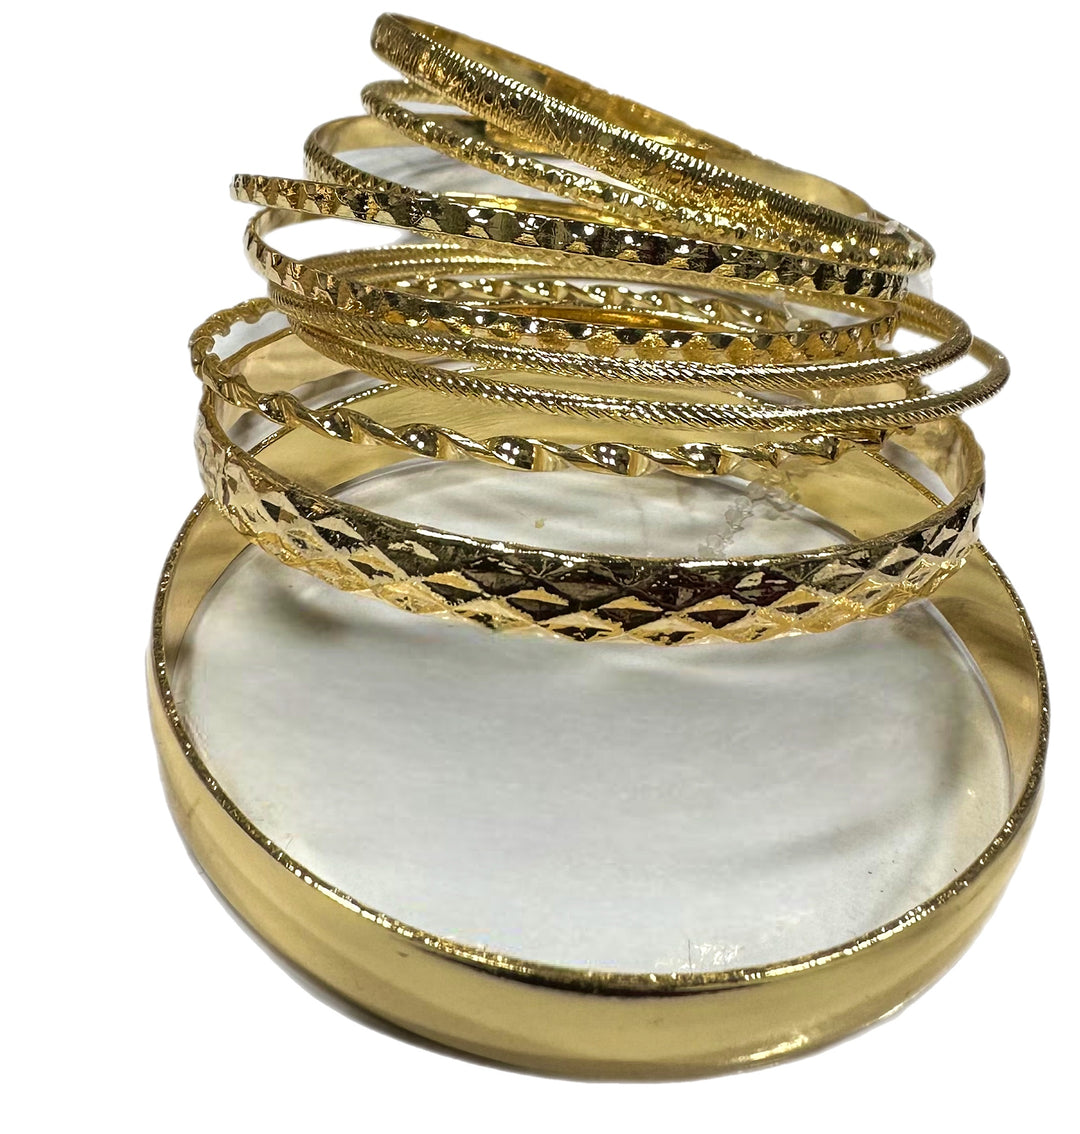 10 piece Gold plated bracelet set